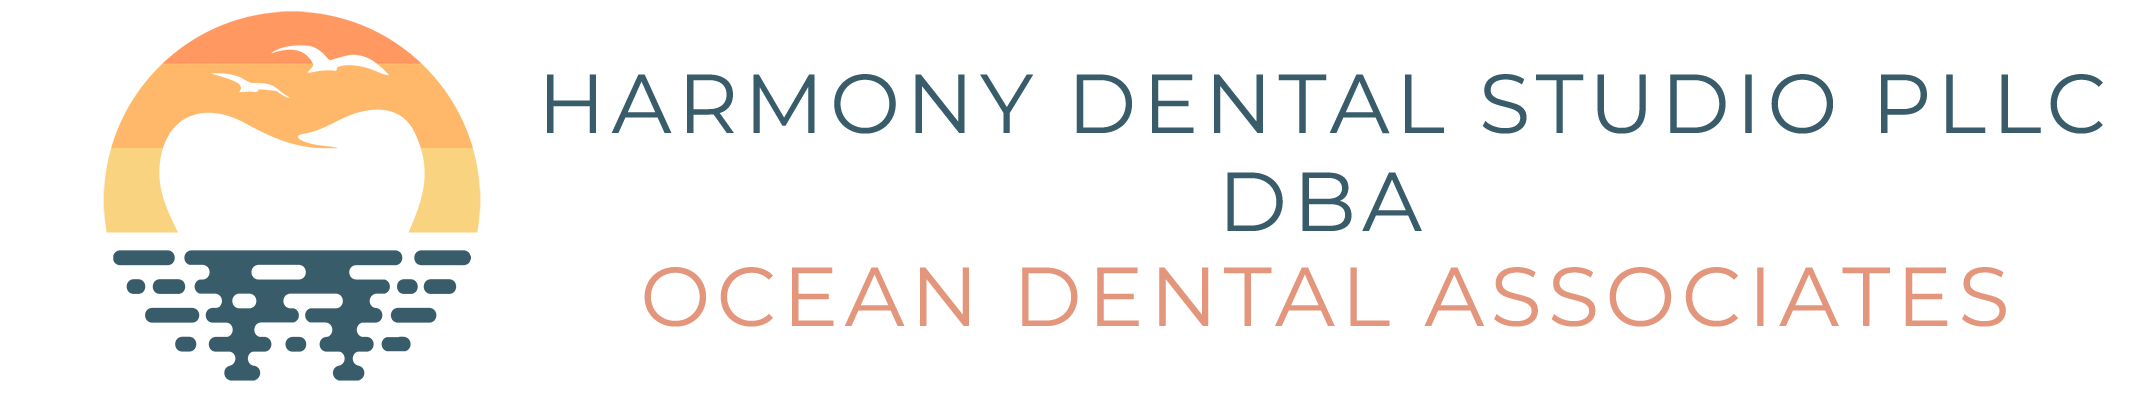 Ocean Dental Associates